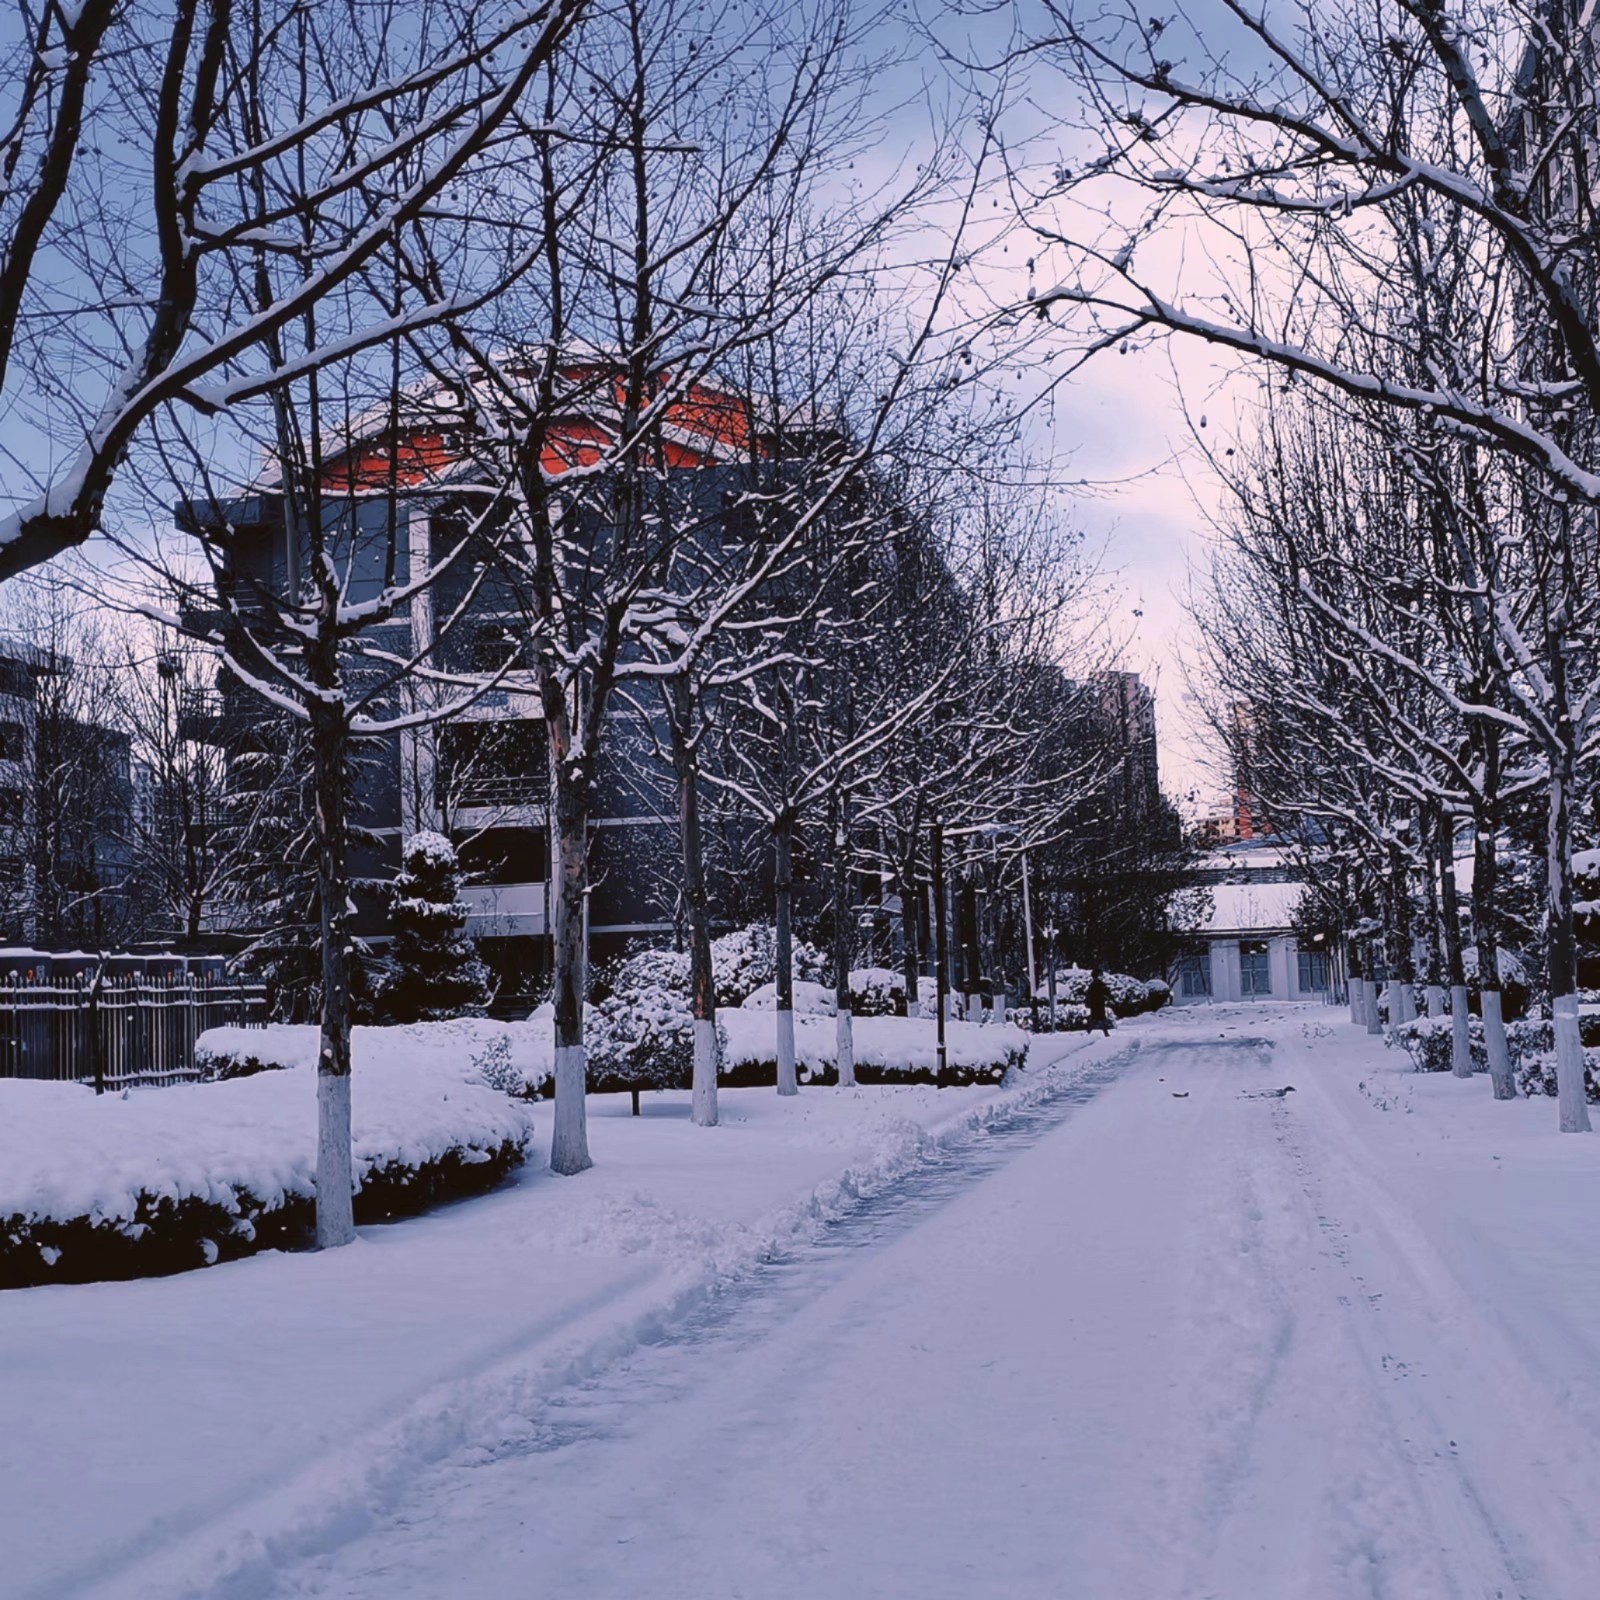 雪是上帝写给人间的诗，飘落在滨医的校园里，把冬天握在手心里，和雪花约好一起去旅行。路雪莹 滨州医学院信息管理与信息系统